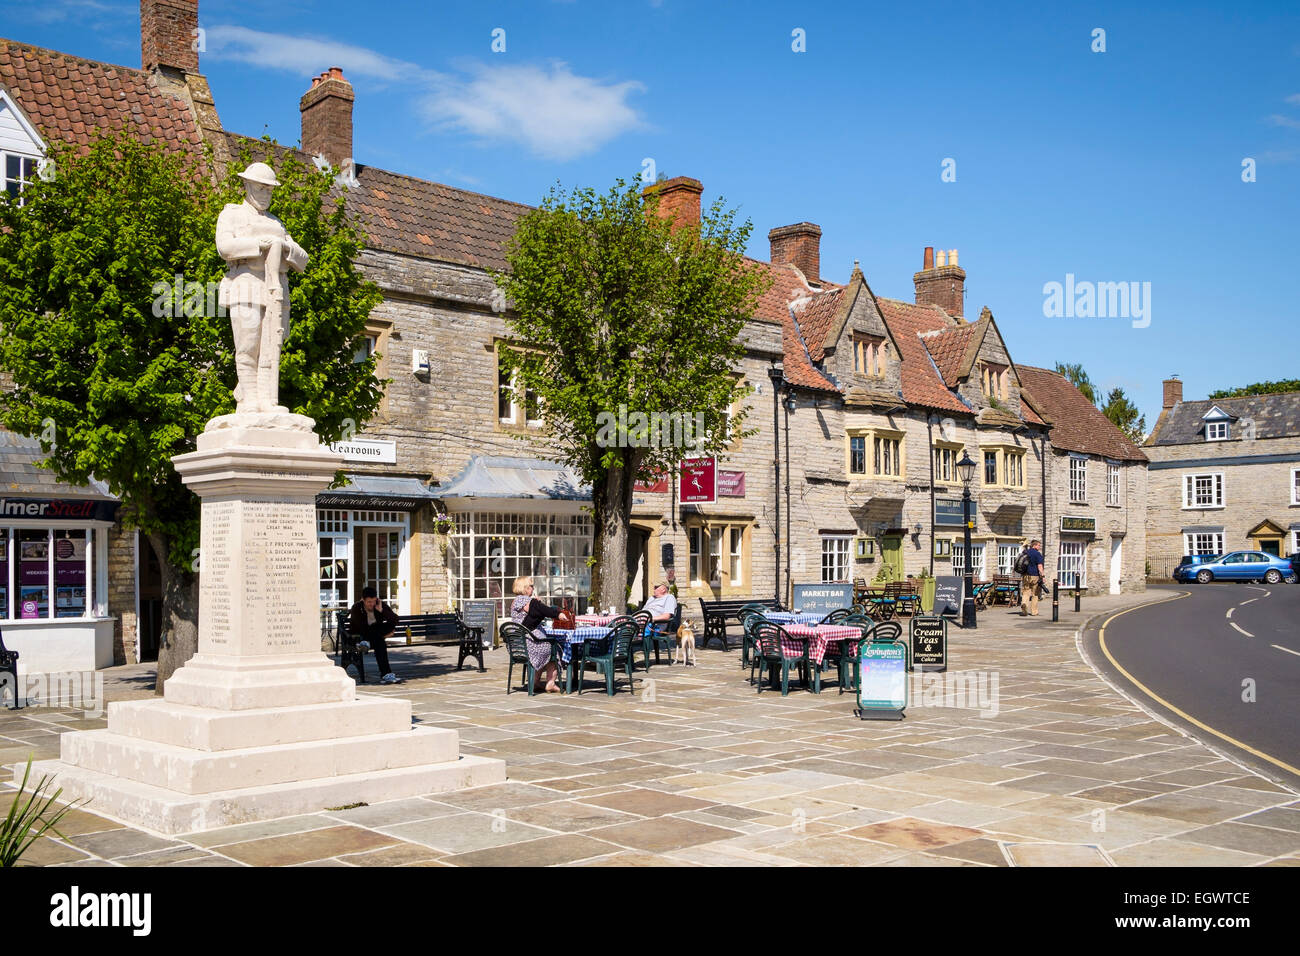 Somerton, une belle vieille petite ville de marché à Somerset, Angleterre, Royaume-Uni, avec son mémorial de guerre et personnes à tables de café Banque D'Images